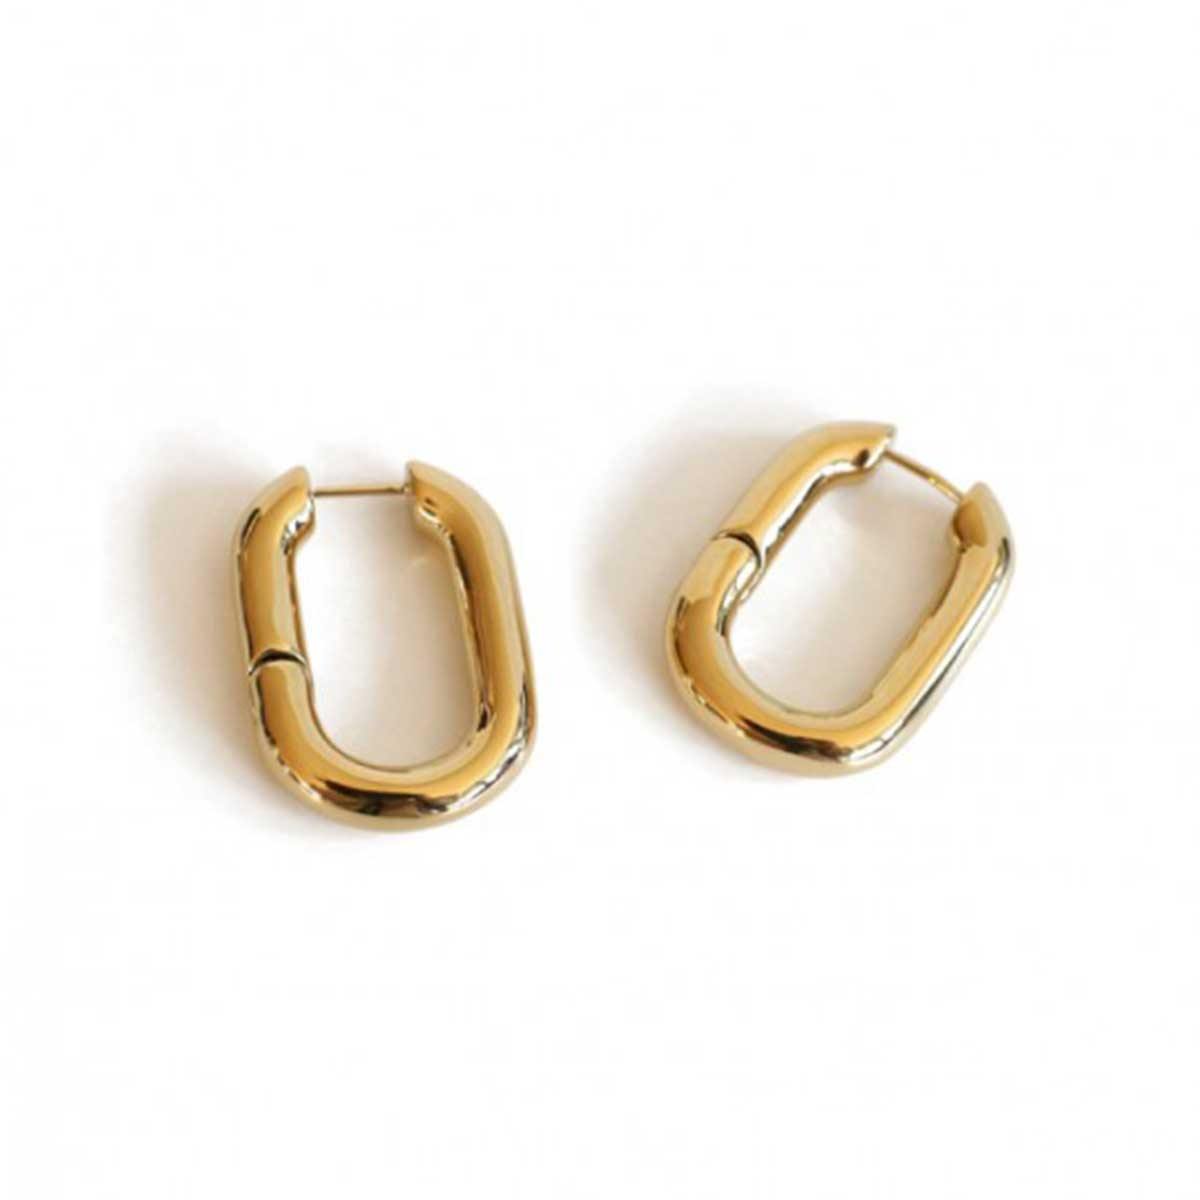 Handmade minimal U-shaped hoop earrings plated in gold